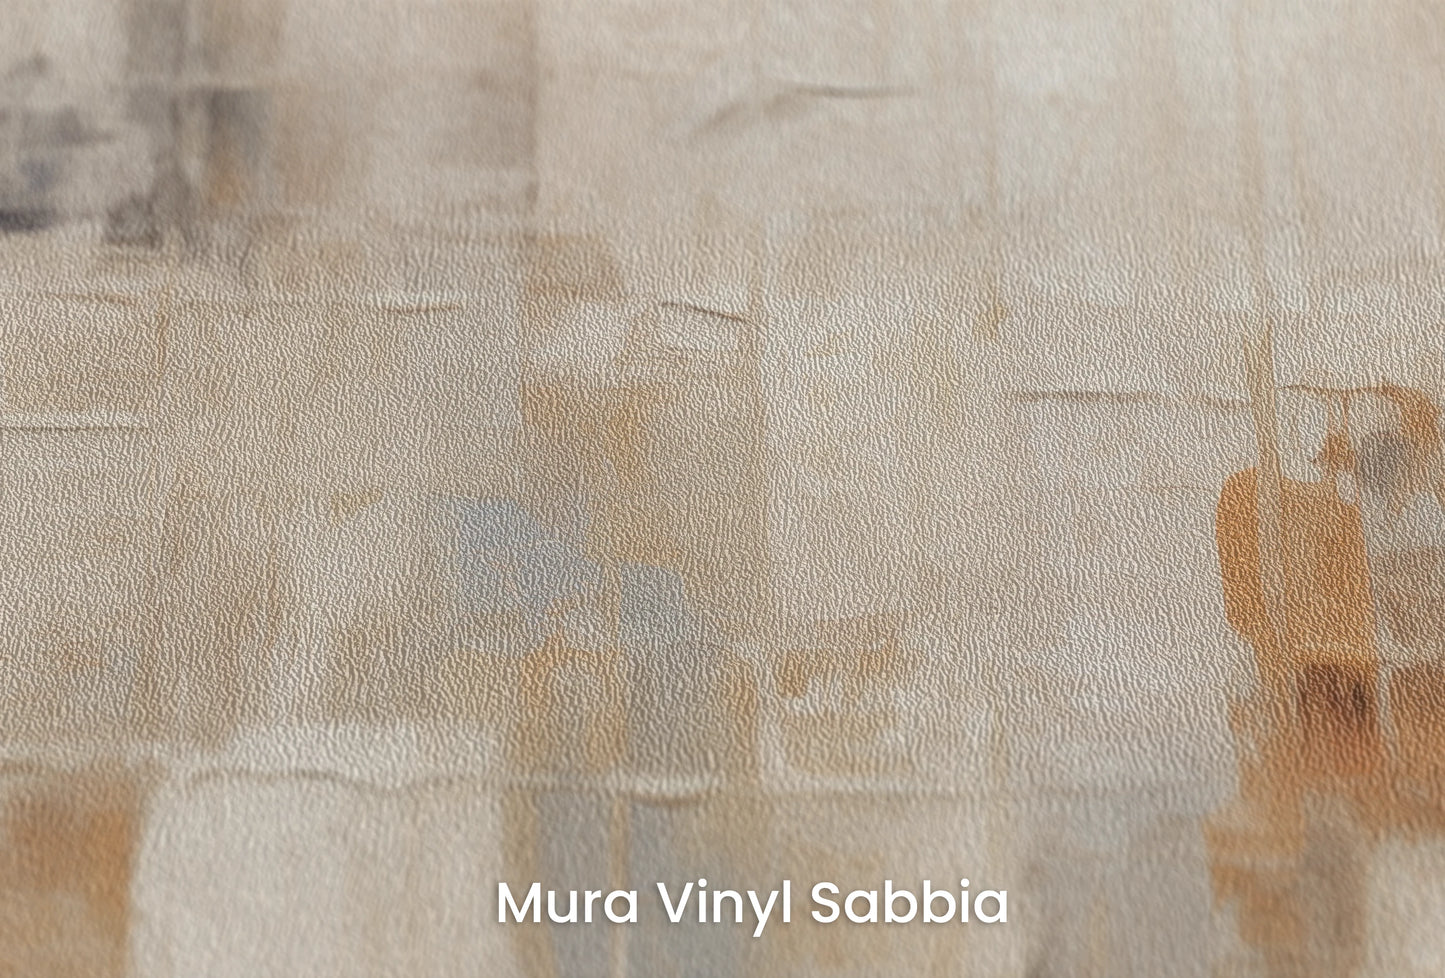 Zbliżenie na artystyczną fototapetę o nazwie Urban Harmony na podłożu Mura Vinyl Sabbia struktura grubego ziarna piasku.